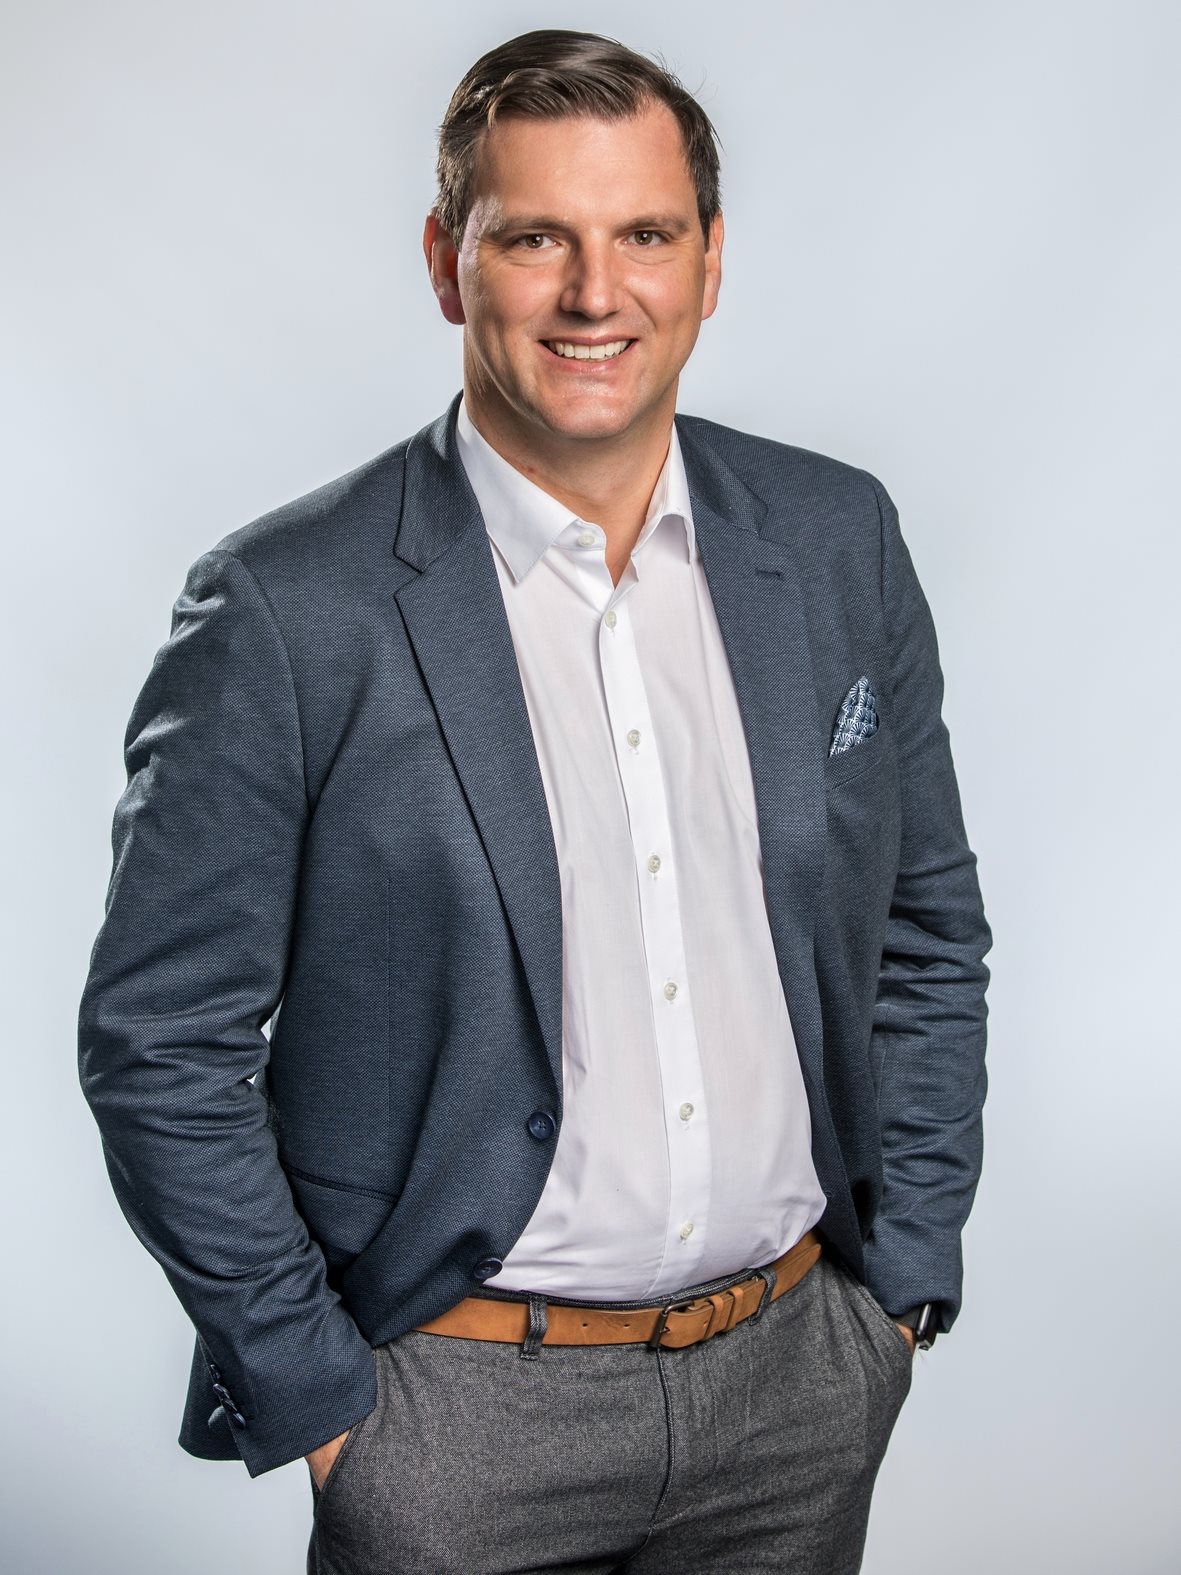 Matthias Haas, CTO von IGEL und Geschäftsführer der IGEL Technology GmbH